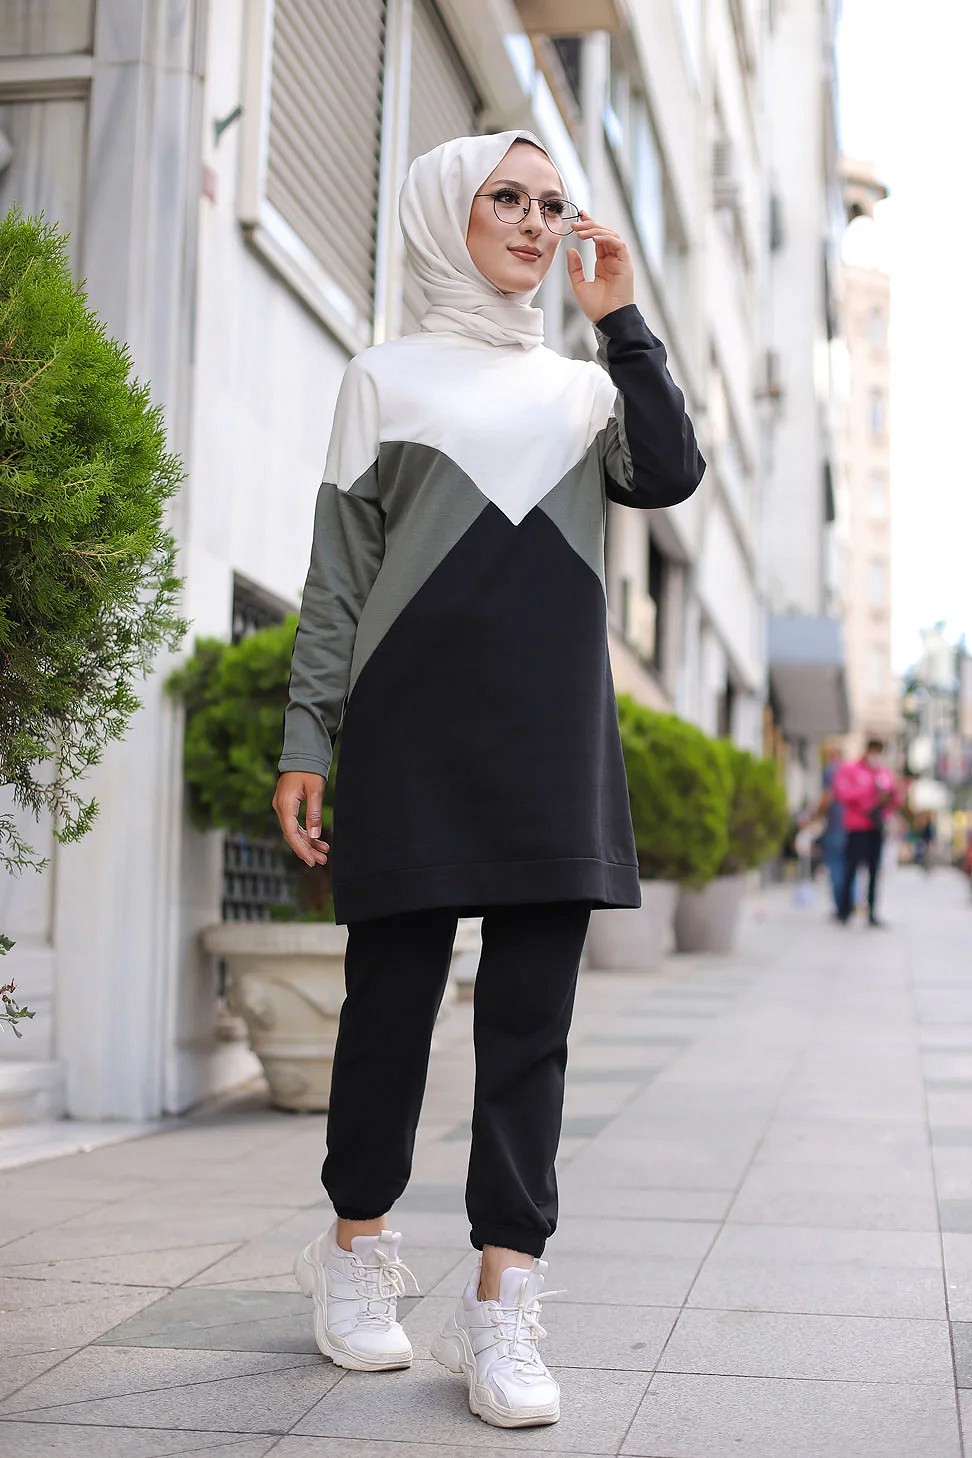 Collection Femme - Ensemble hijab avec jupe, pantalon et jogging sport